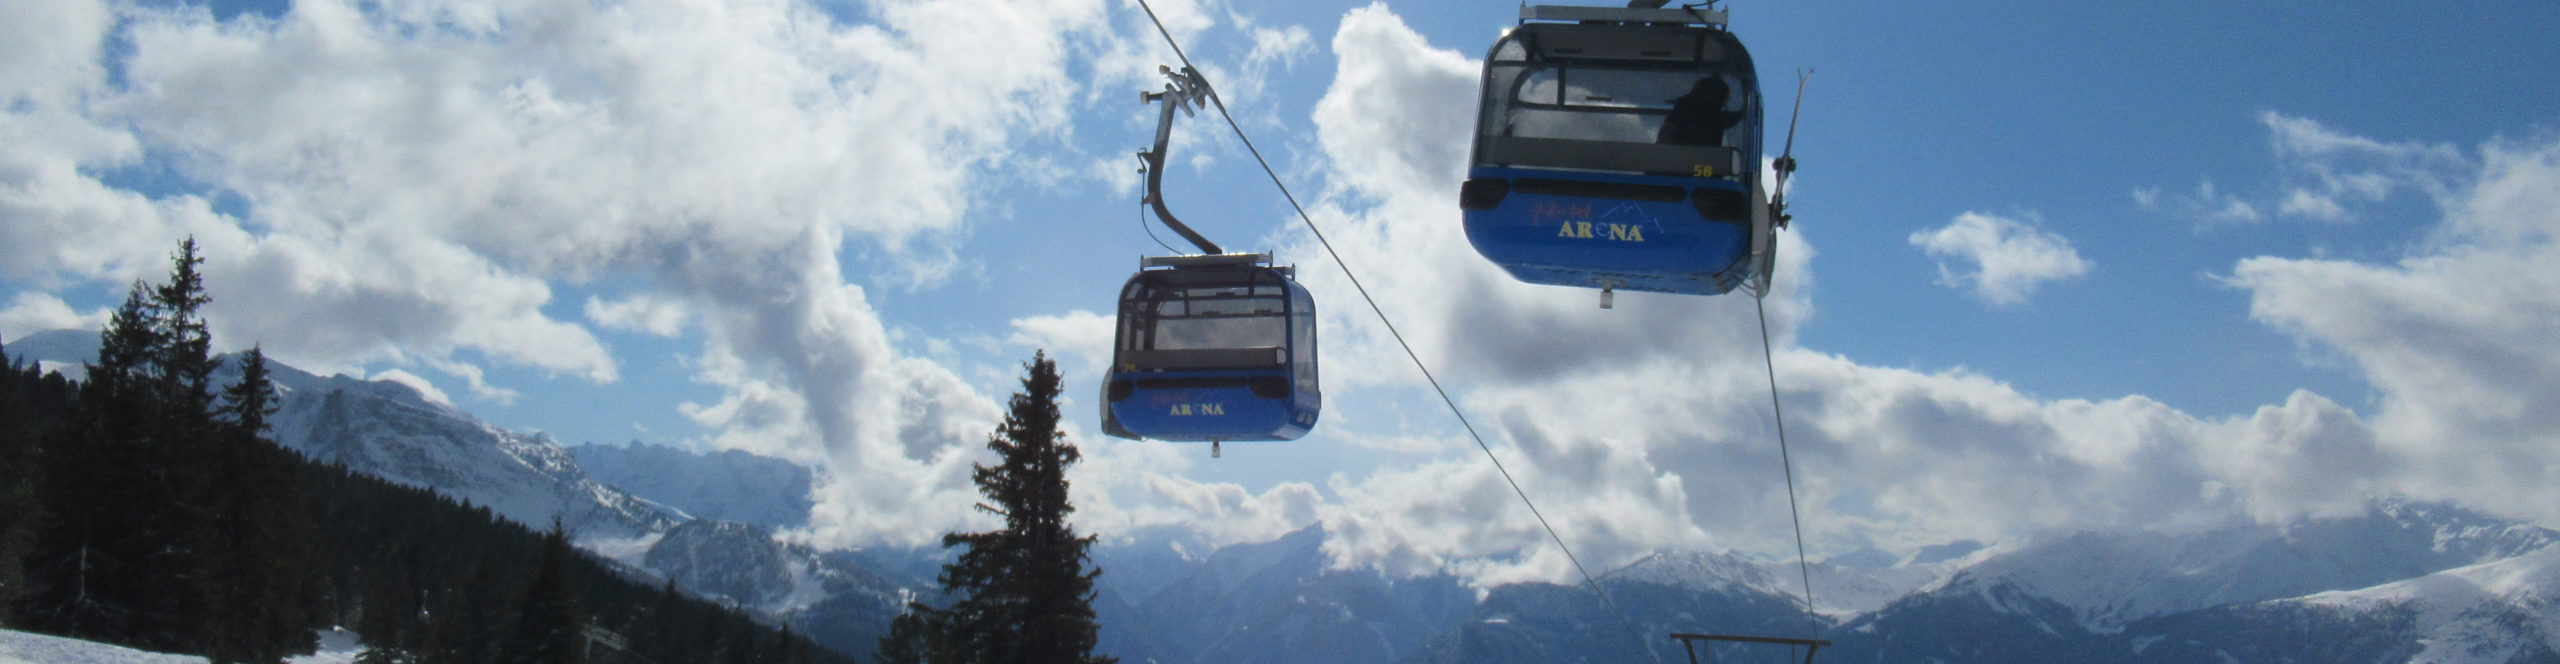 ZILLERTAL – Skiwochenende ab Freitag Nachmittag – Hotel in Strass – Skisafari Zell & Kaltenbach 